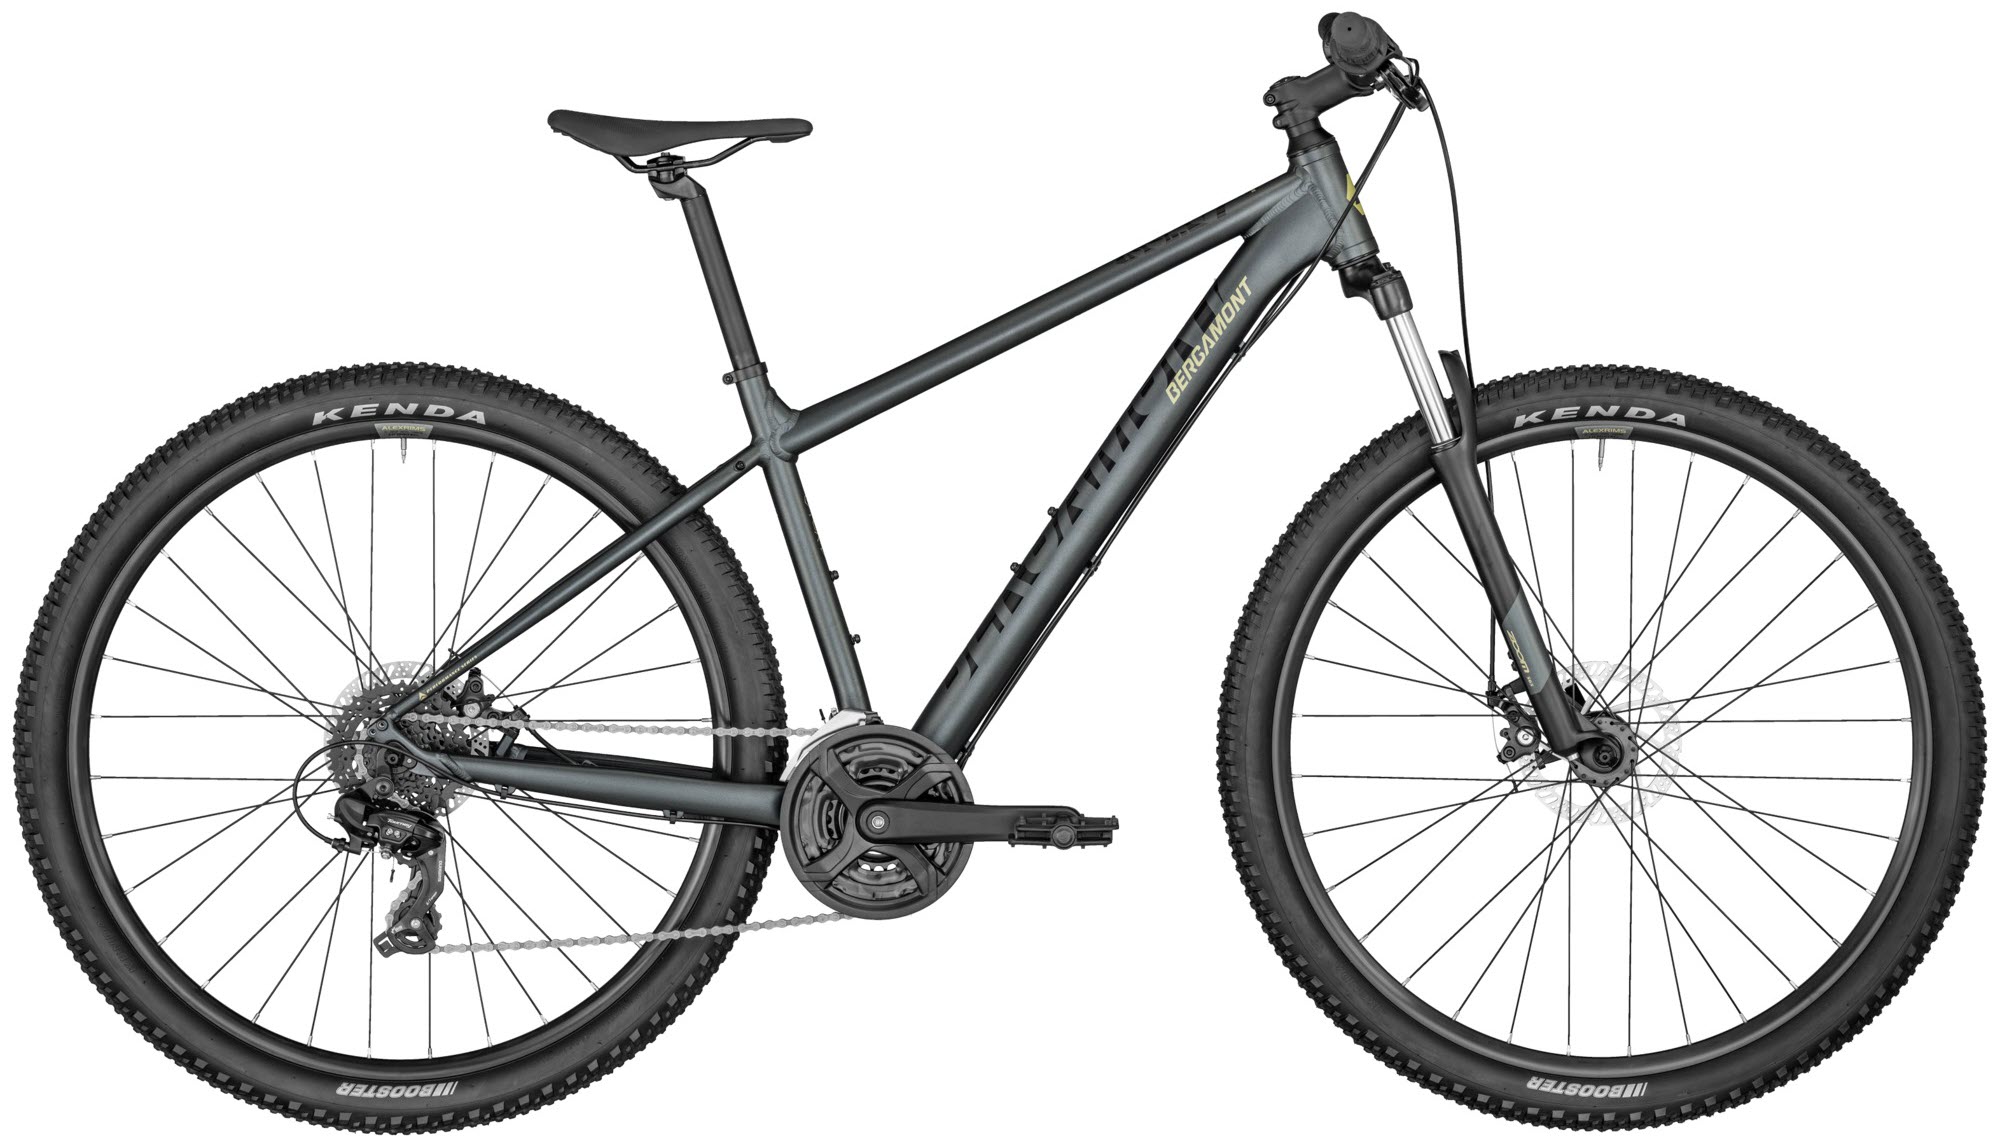  Отзывы о Горном велосипеде Bergamont Revox 2 27,5 2022